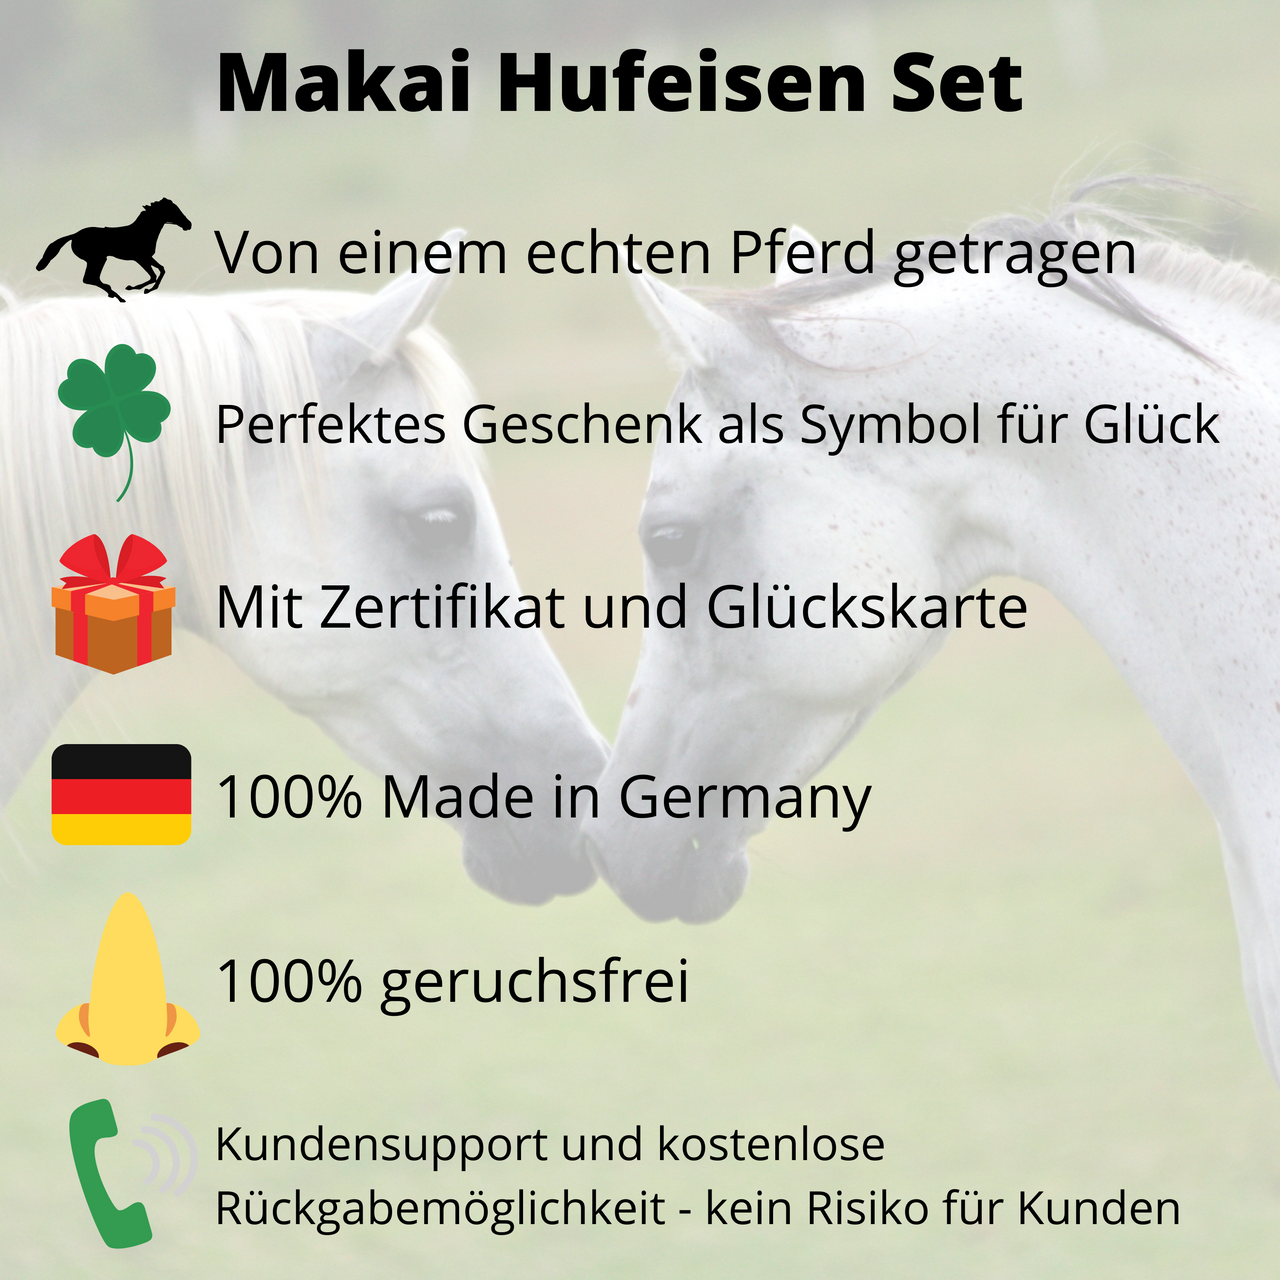 Makai Hufeisen Set, von echten Pferden getragen, perfektes Geschenk als Symbol für Glück, mit Zertifikat und Glückskarte, 100% Made in Germany, 100% geruchsfrei, kostenlose Rückgabemöglichkeit